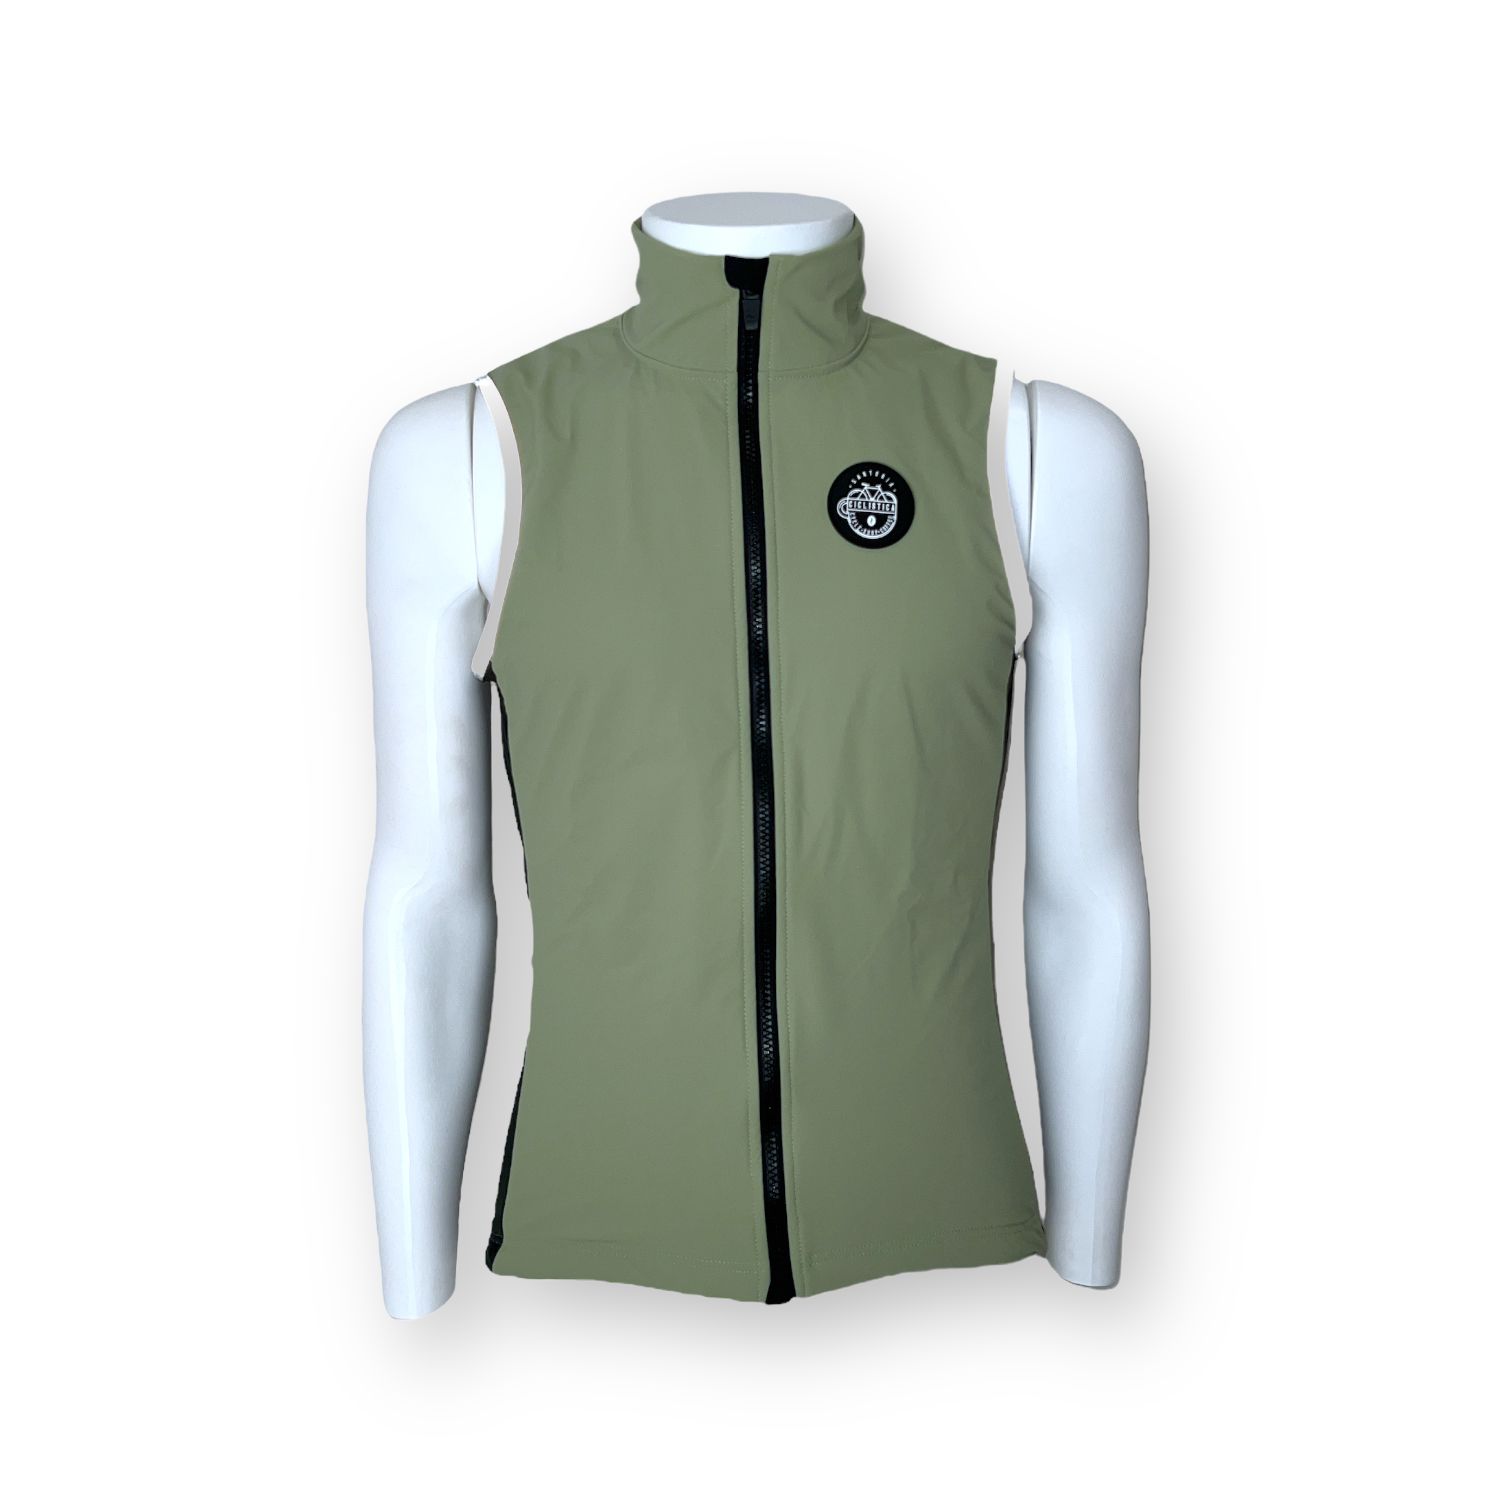 Unisex Warm winter vest with PrimaLoft® - Moss green